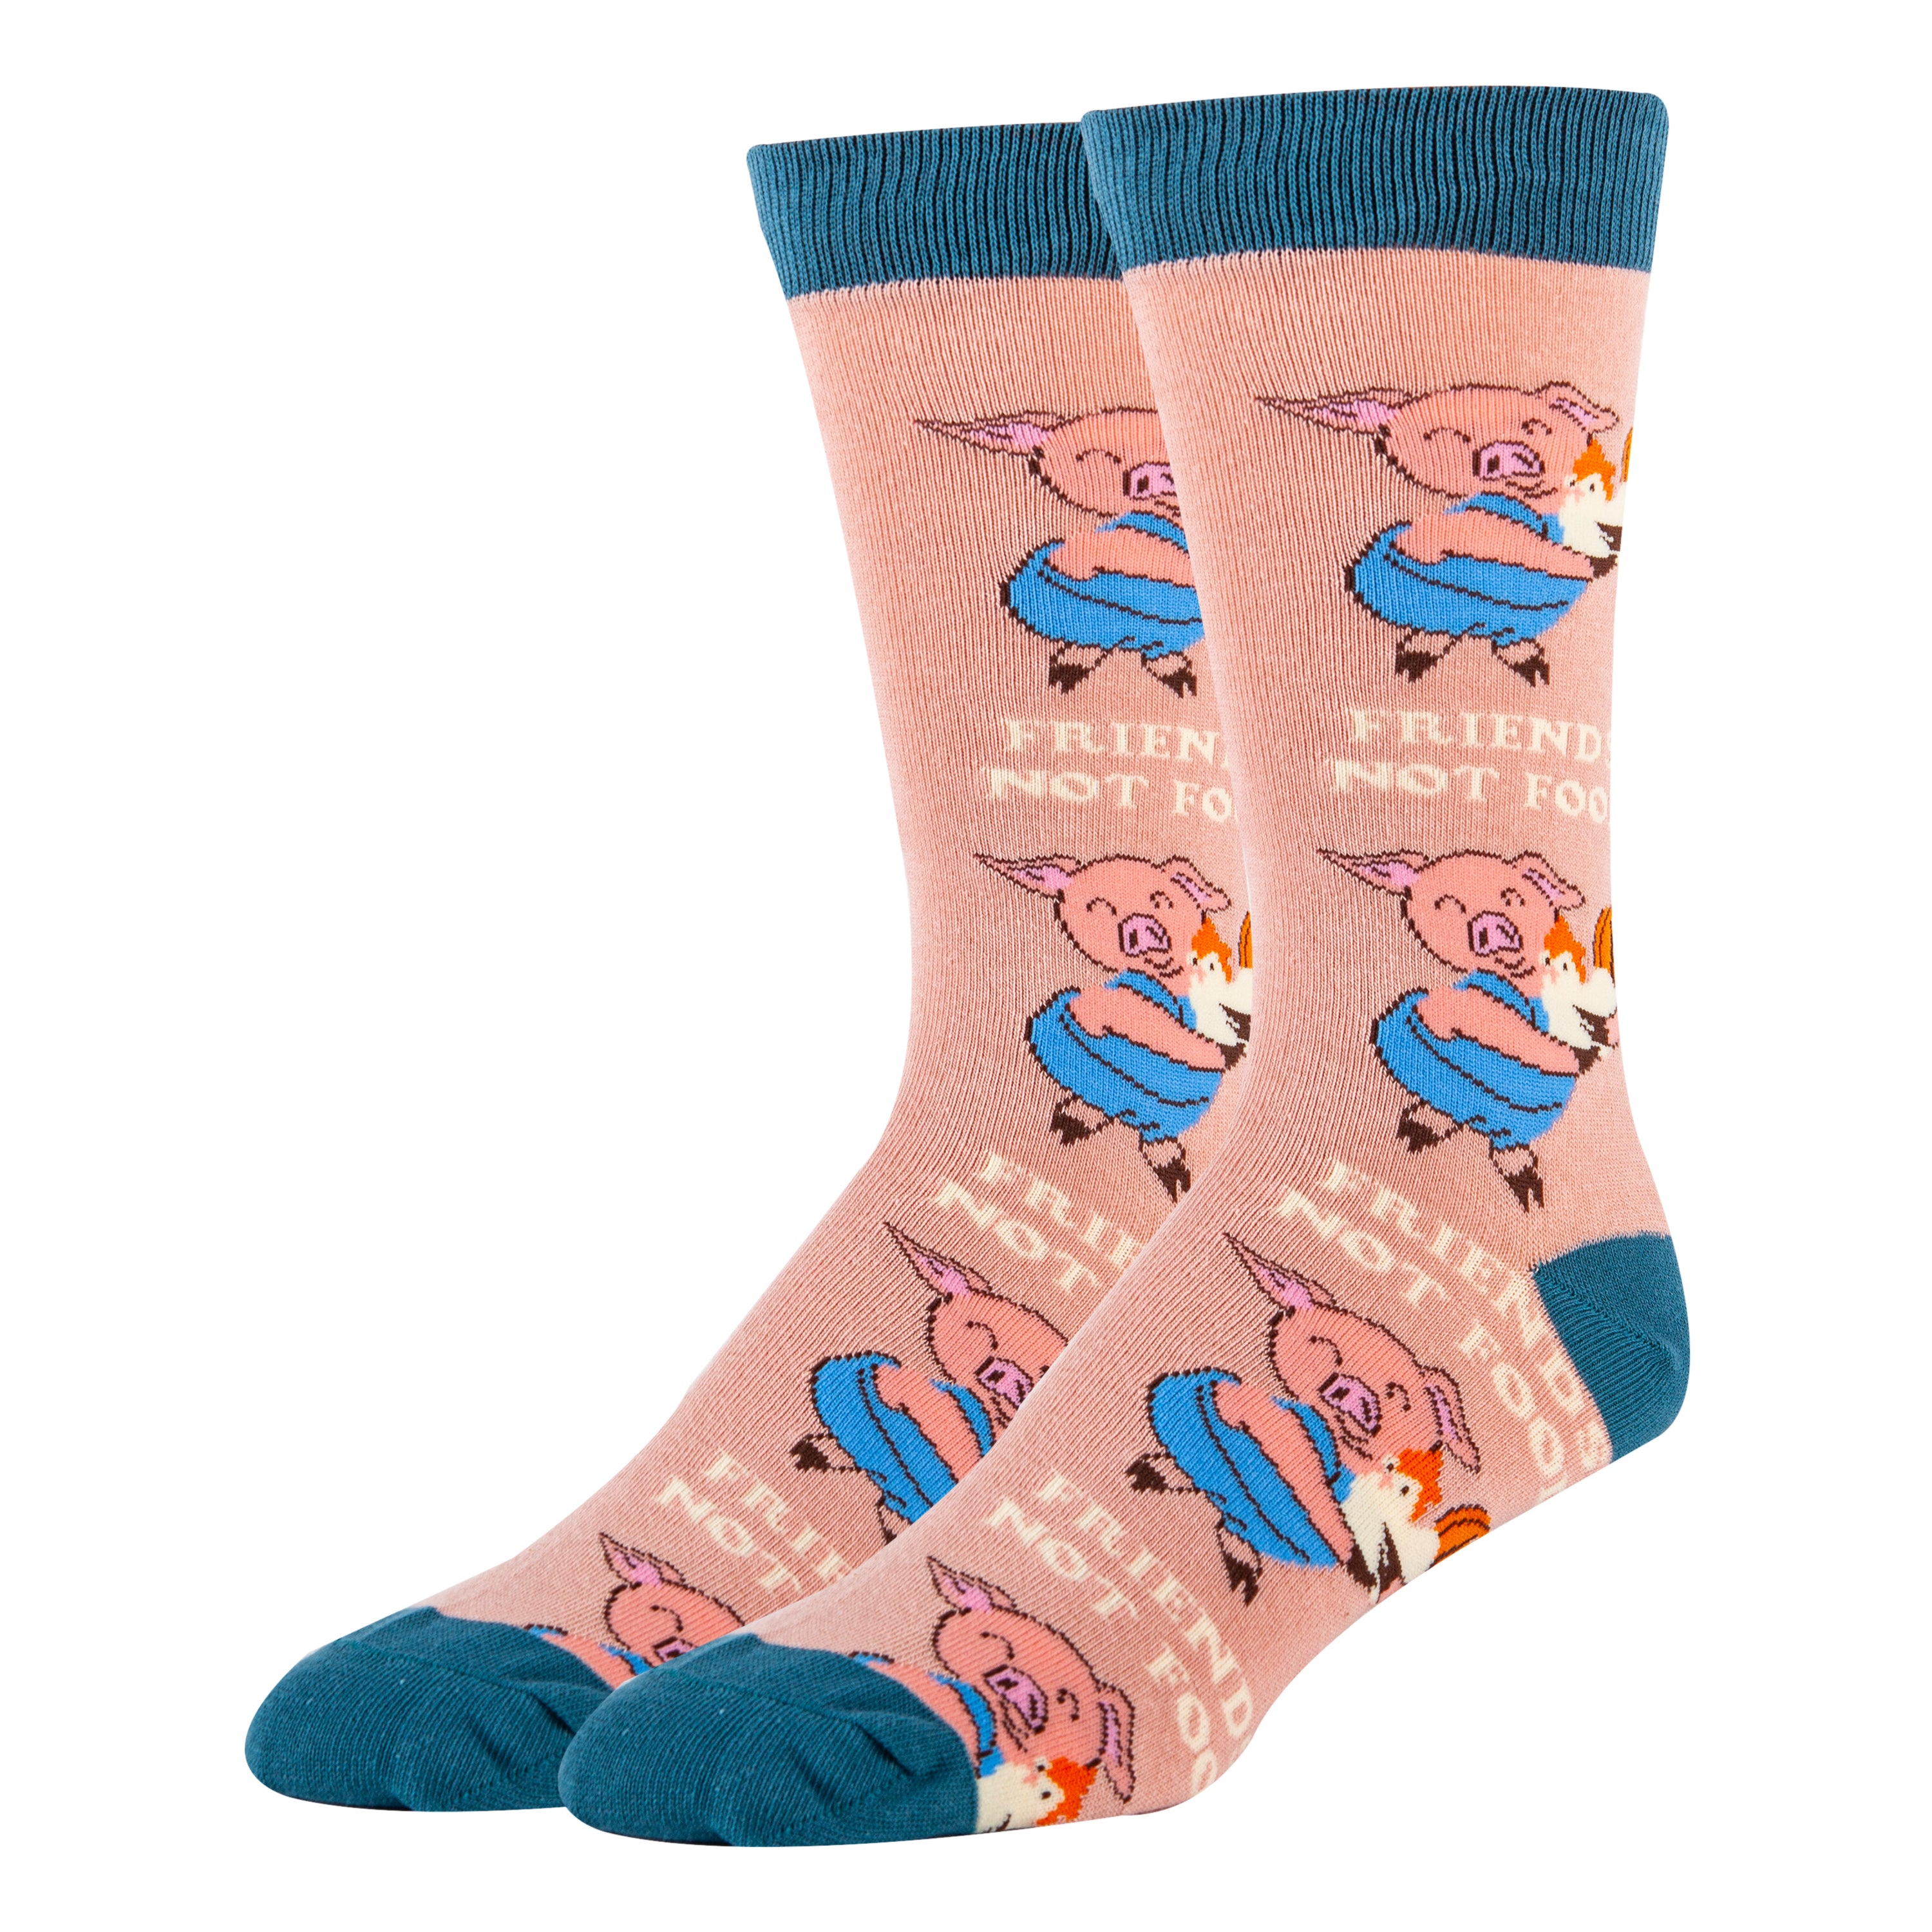 Friends Don't lie Socks, Novelty Socks For Women